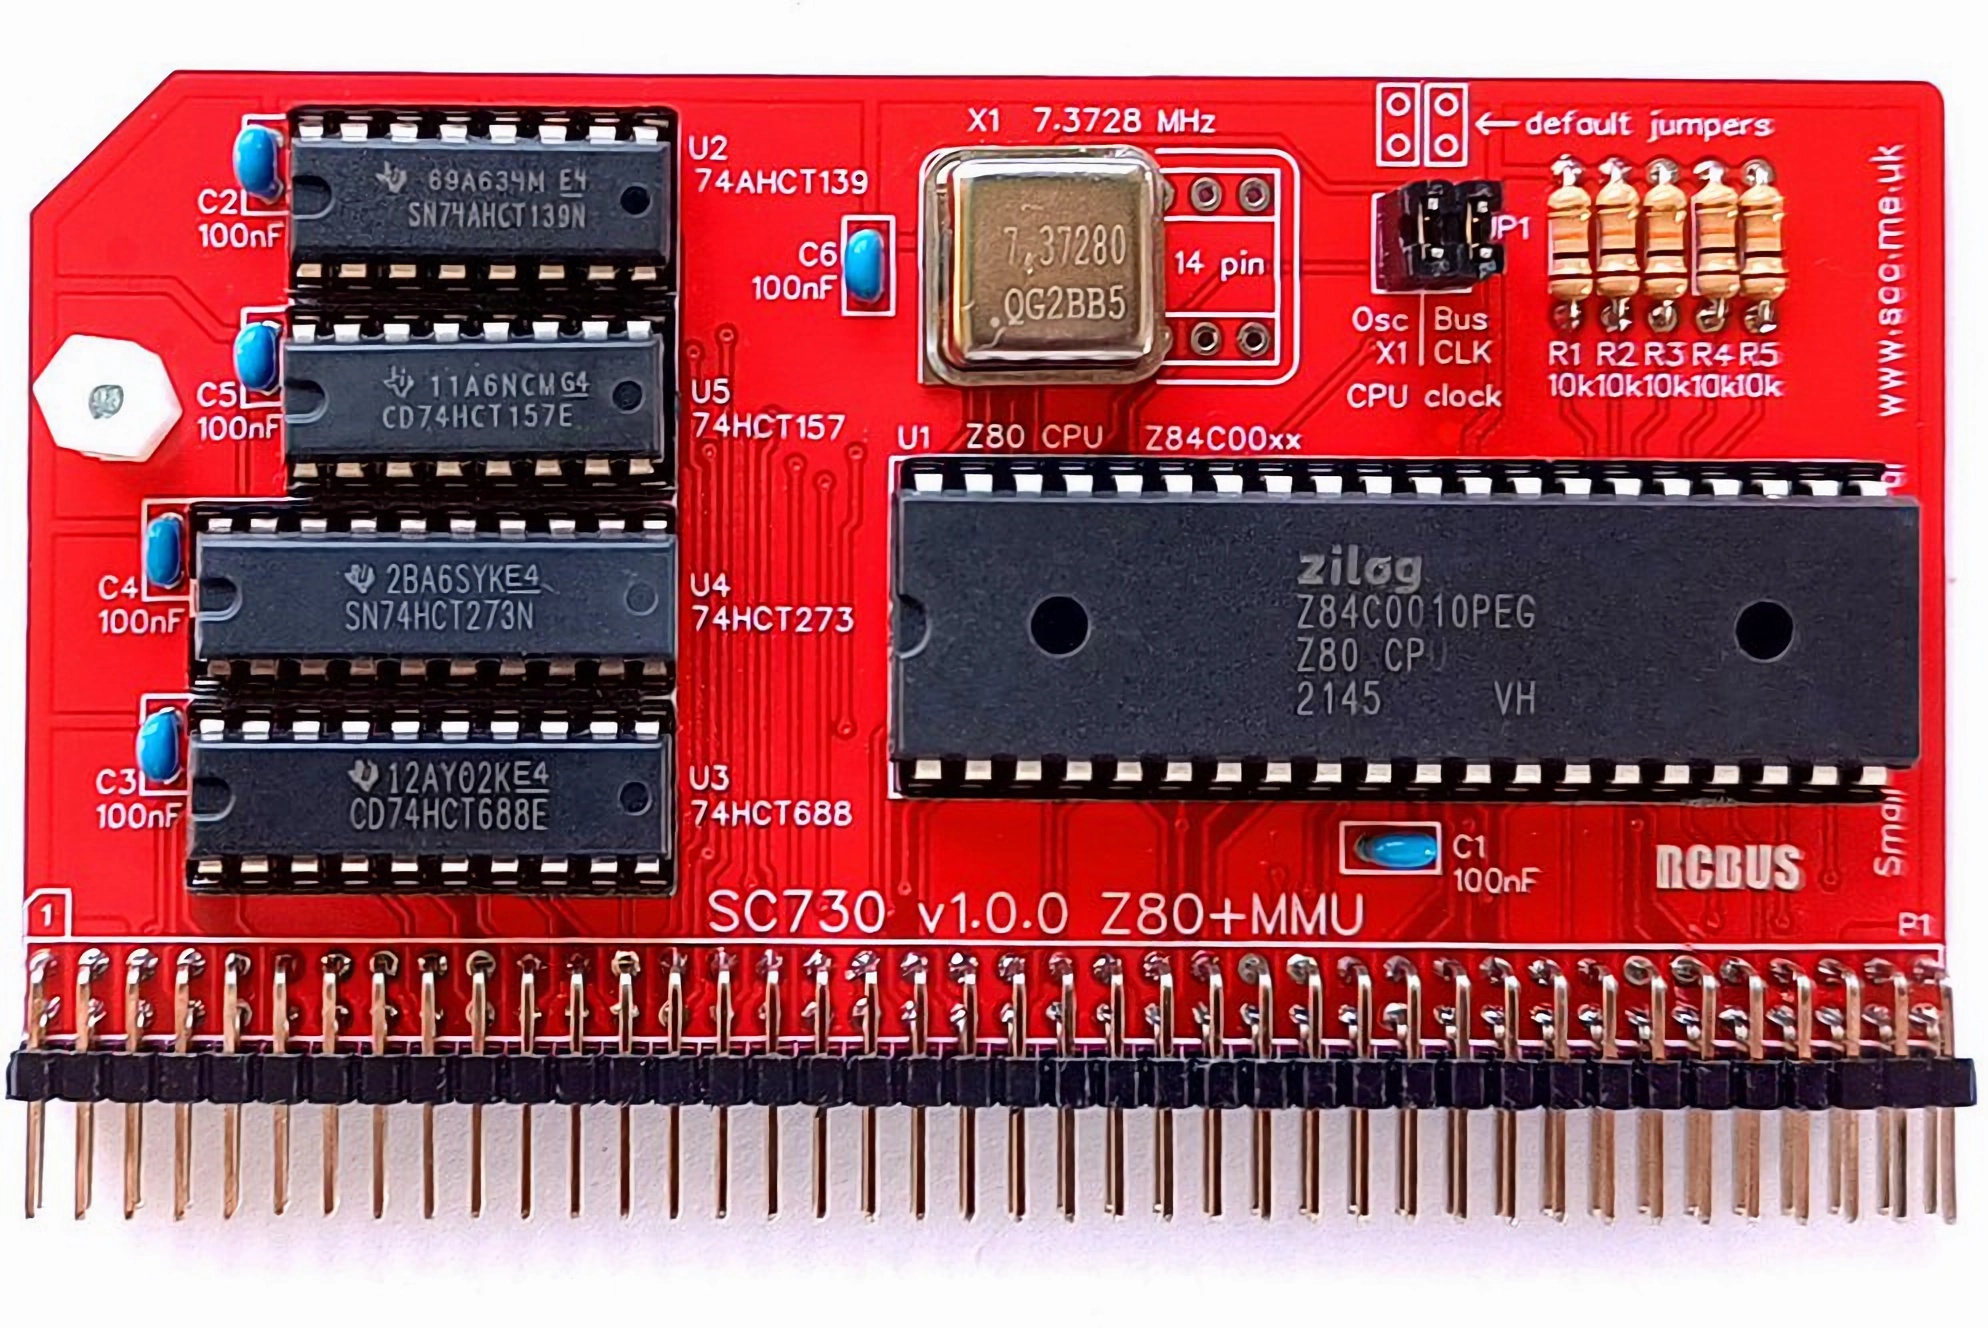 SC730 RCBus Z80 CPU plus MMU Module